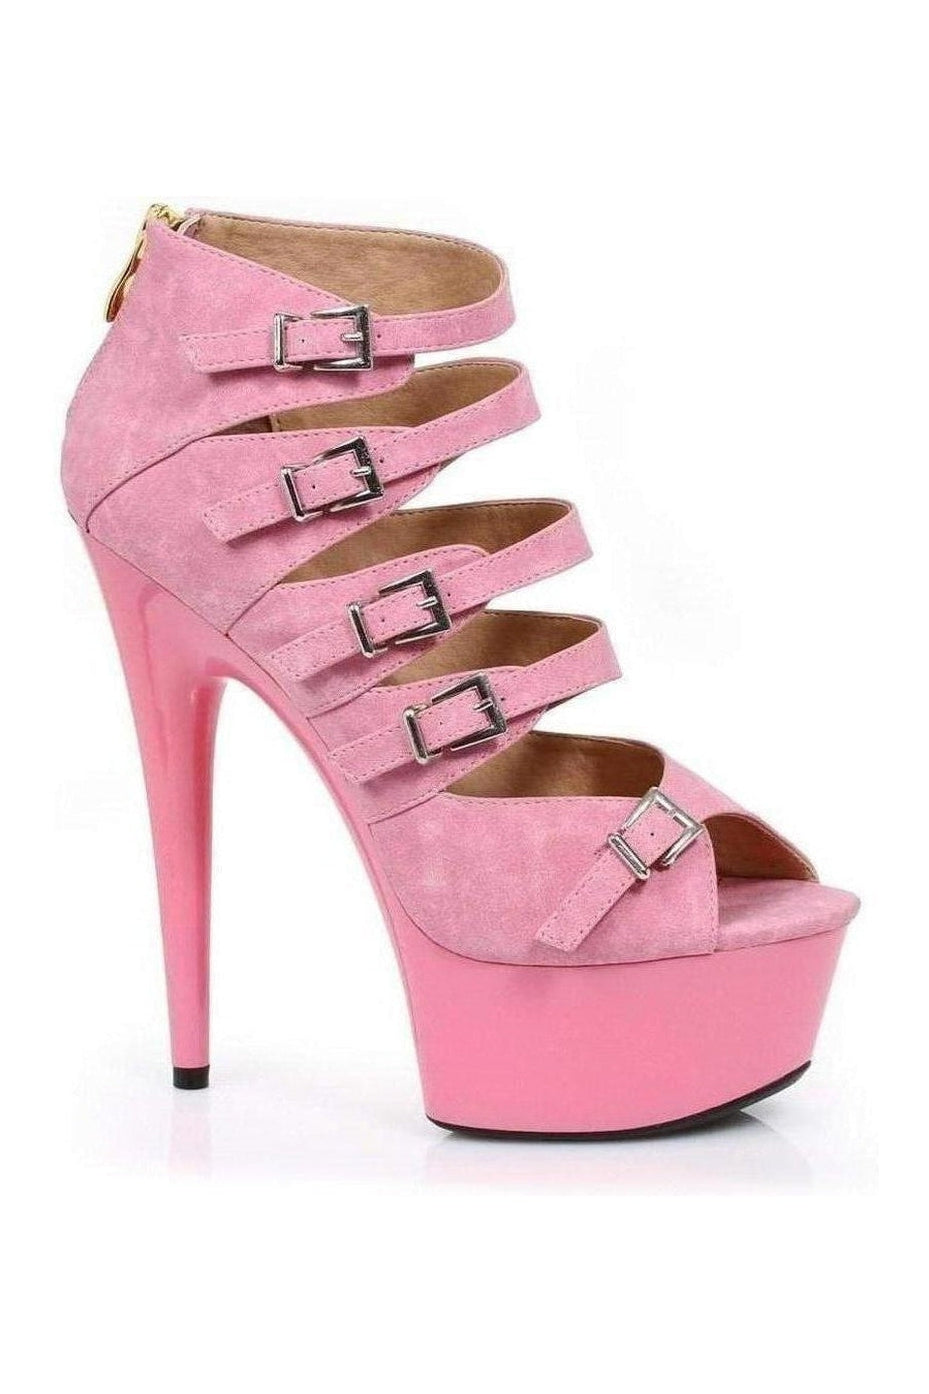 609-UNA Platform Sandal | Pink Faux Leather-Ellie Shoes-Pink-Sandals-SEXYSHOES.COM